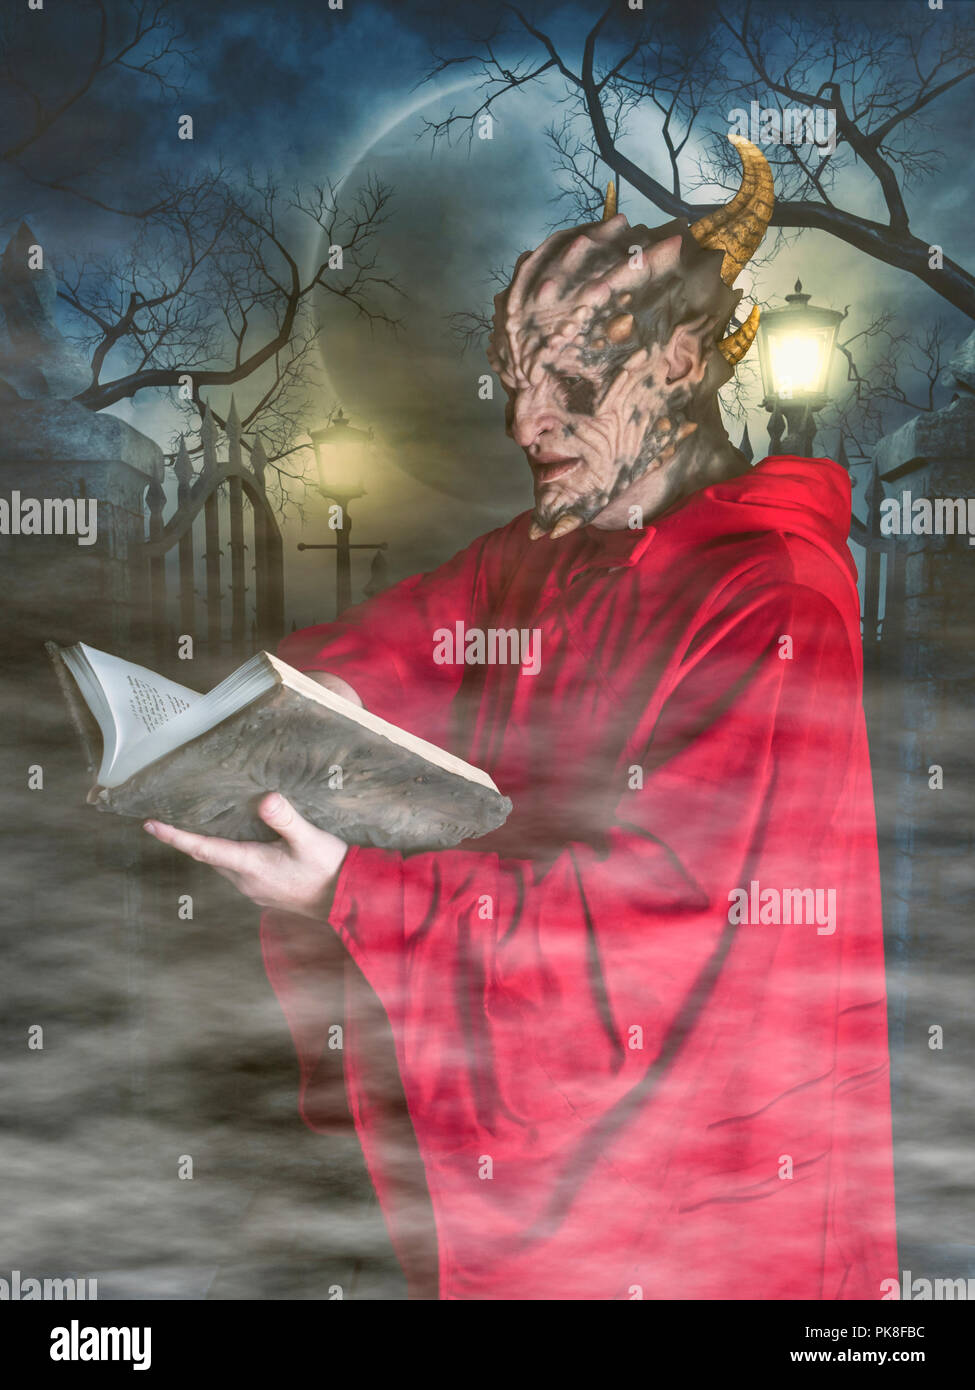 Halloween kostüm Daemon Kultisten roten Gewand mit Haube lesen Der  necronomicon grimoire Buch in einer nebligen Friedhof Szene bei Nacht  monster Stockfotografie - Alamy